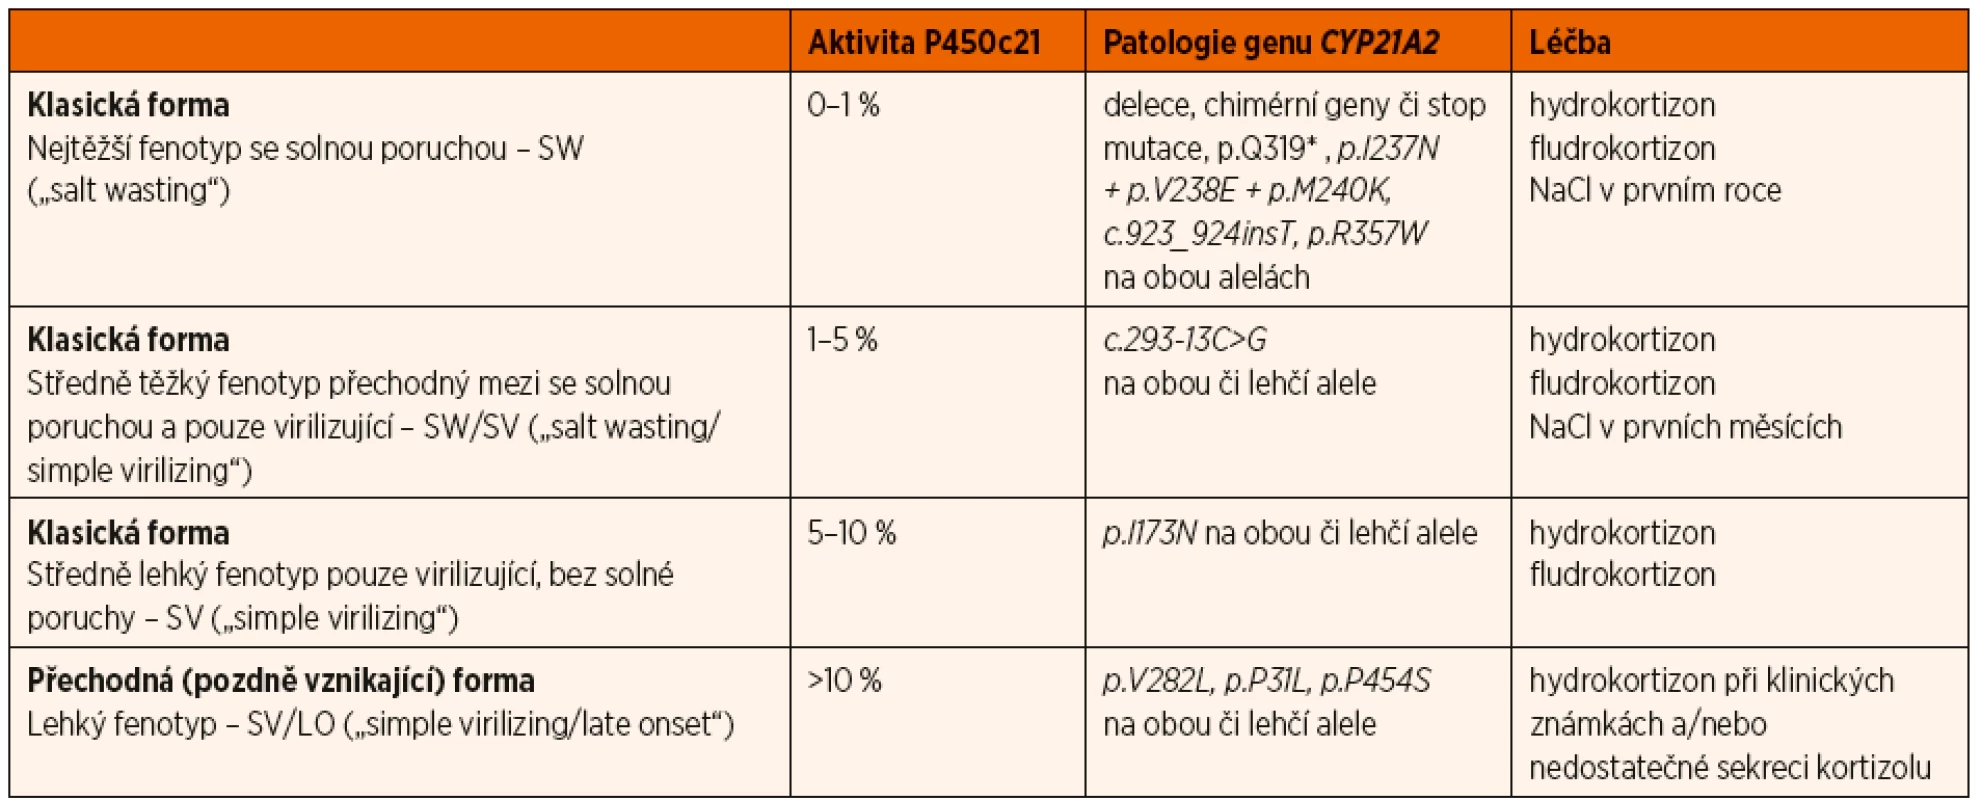 Dělení pacientů s deficitem 21-hydroxylázy podle fenotypové formy onemocnění, odpovídající zbytkové aktivitě 21-hydroxylázy
(enzym P450c21) a patologii v genu pro P450c21 (CYP21A2), je použito aktuální genetické označení mutací platné od roku 2018 [1, 2].